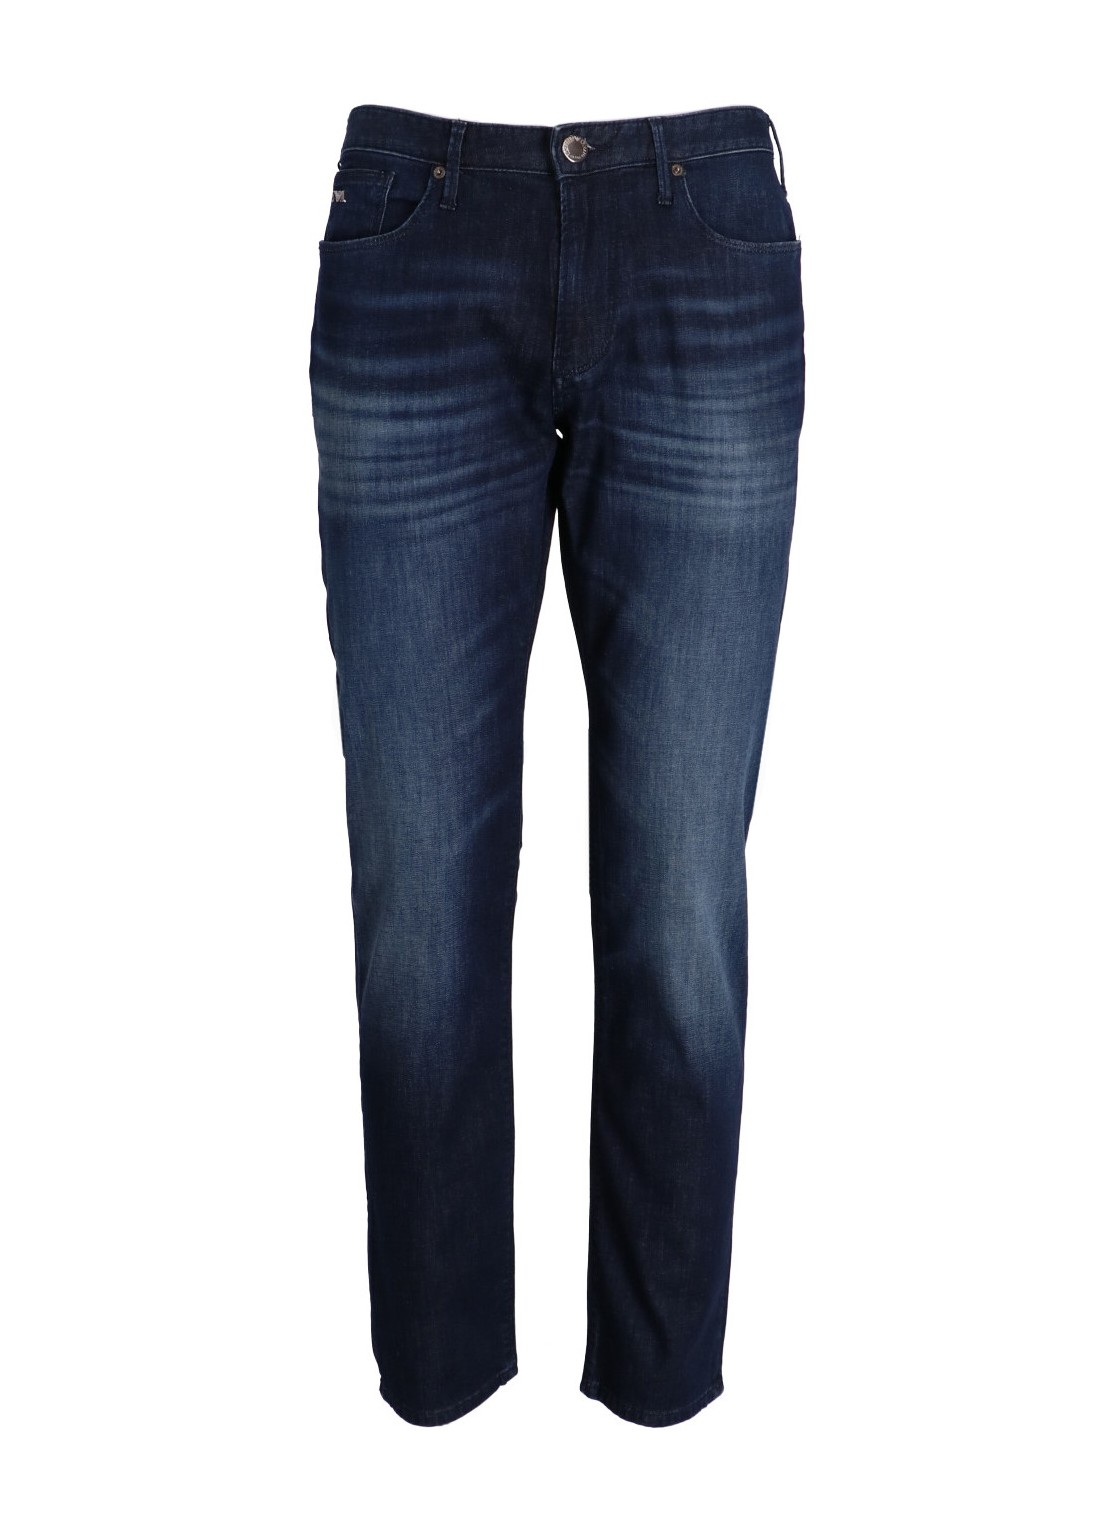 Pantalon jeans emporio armani denim manj06 - 8n1j061d16z 0942 talla 31
 